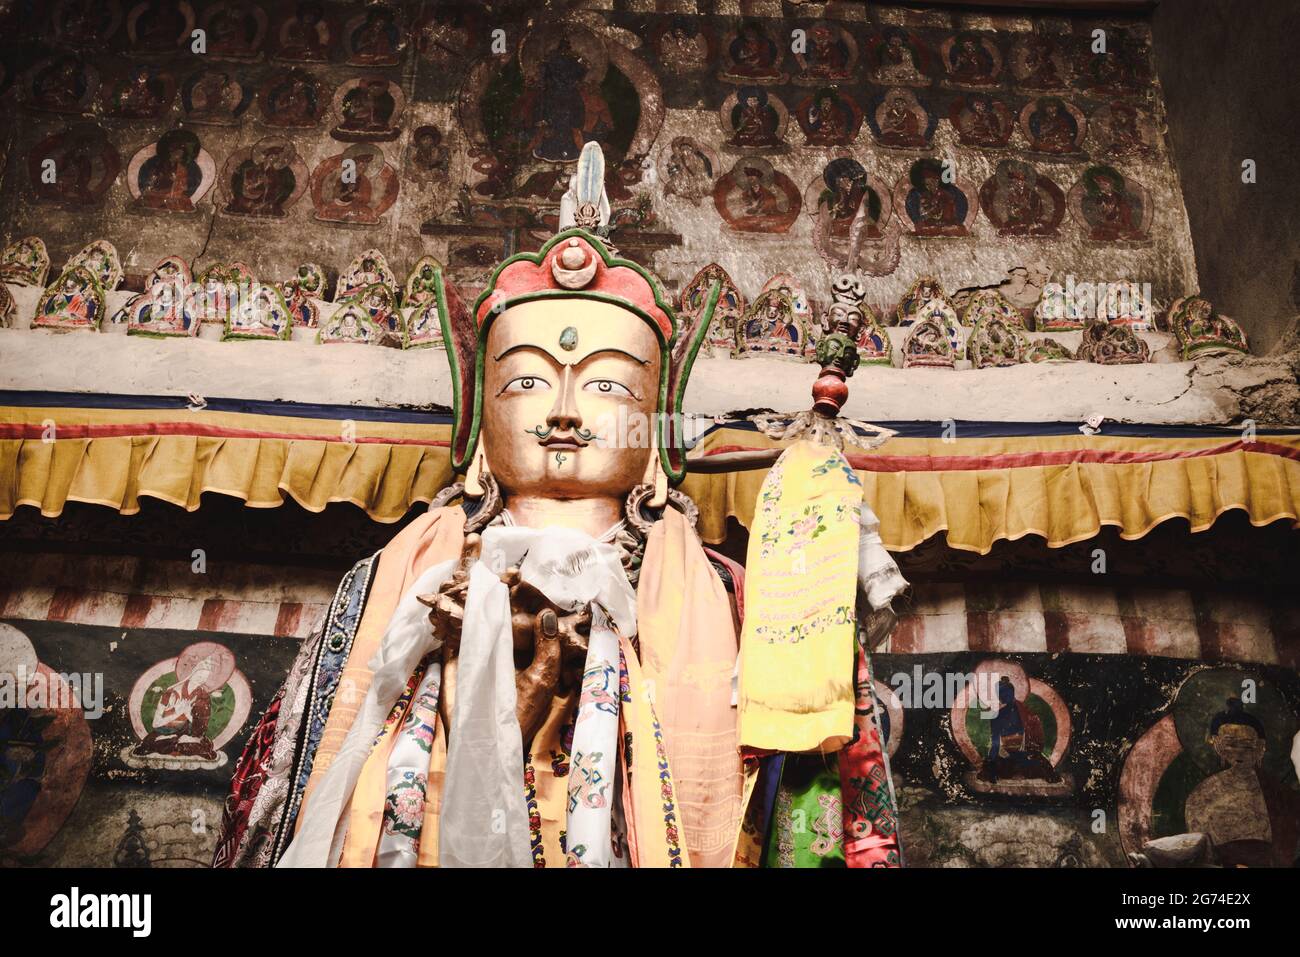 goldene Statue von padma sambawa, Padmasambhava in einem tibetischen Kloster mit alter religiöser, buddhistischer Malerei im Hintergrund. Indien, Himachal Pradesh. Stockfoto